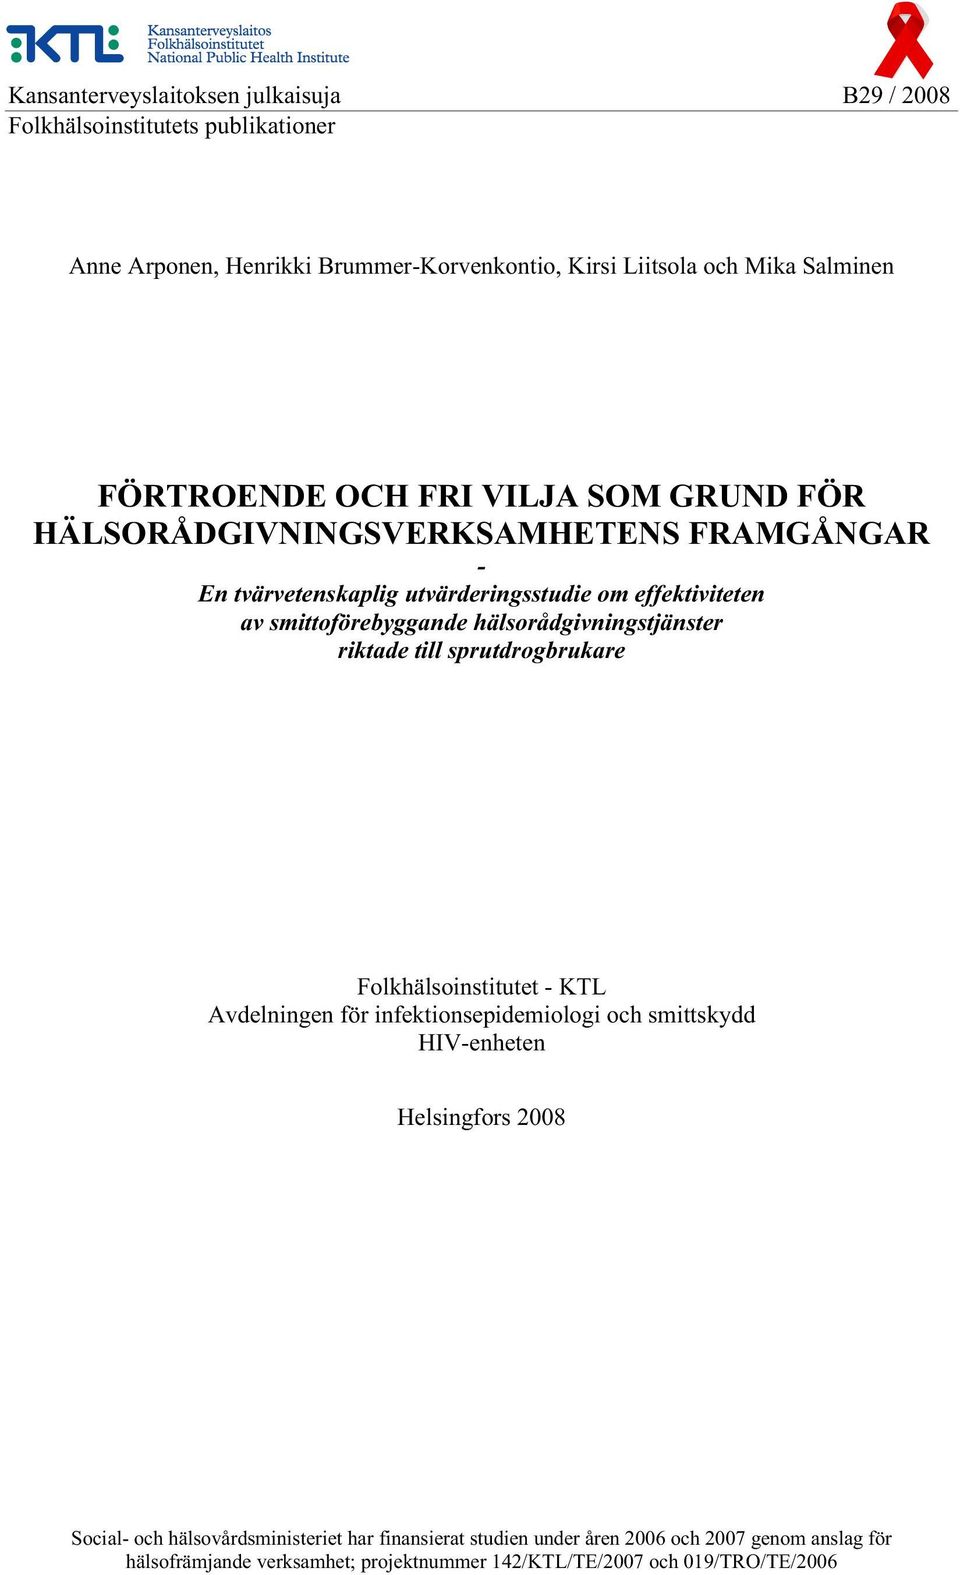 hälsorådgivningstjänster riktade till sprutdrogbrukare Folkhälsoinstitutet - KTL Avdelningen för infektionsepidemiologi och smittskydd HIV-enheten Helsingfors 2008